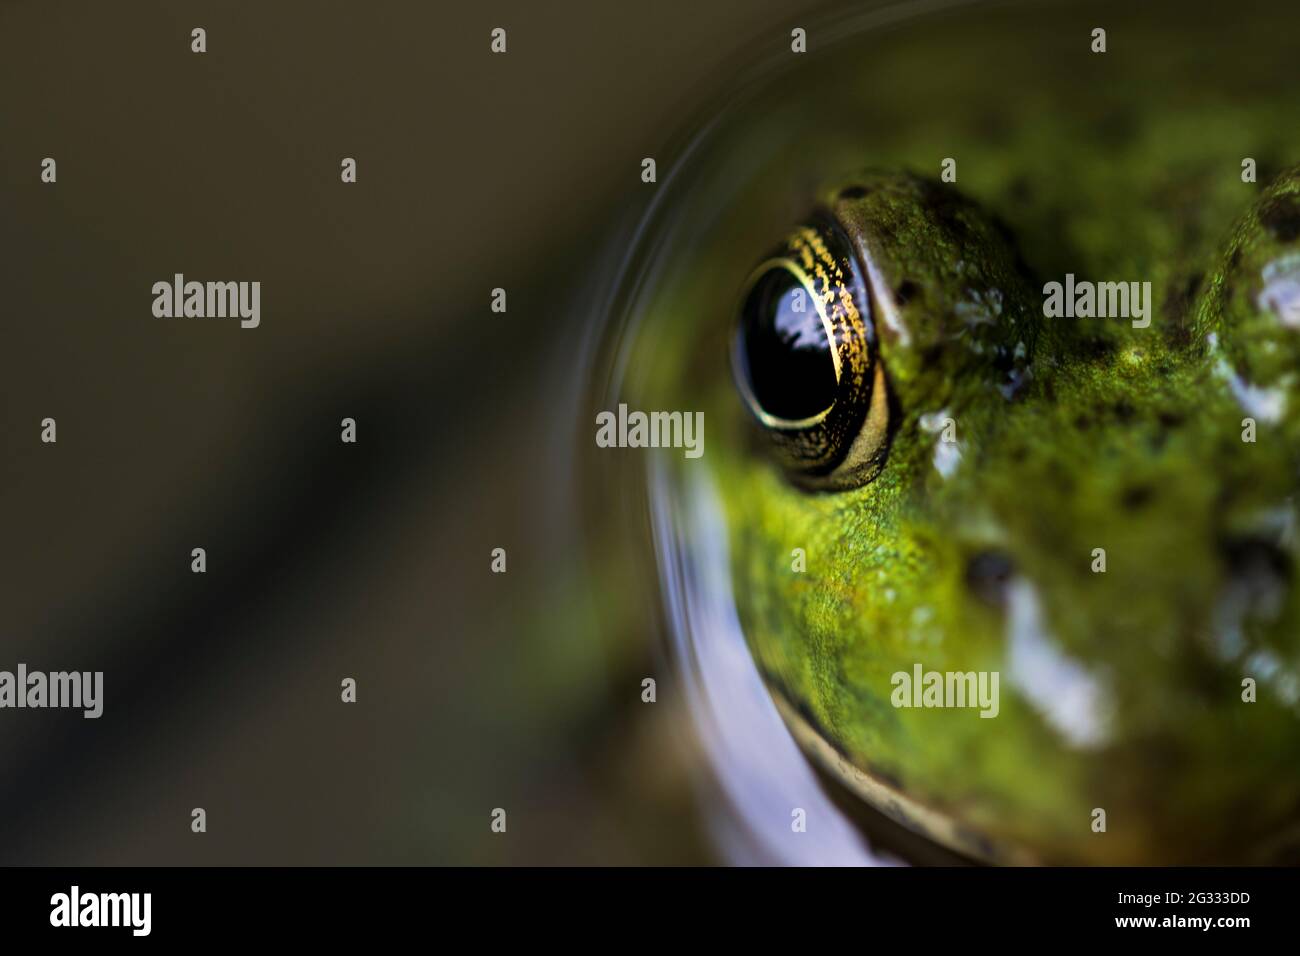 Froschauge aus nächster Nähe schwimmt weg. Extreme Nahaufnahme Froschaugen  Blick in die Kamera Stockfotografie - Alamy